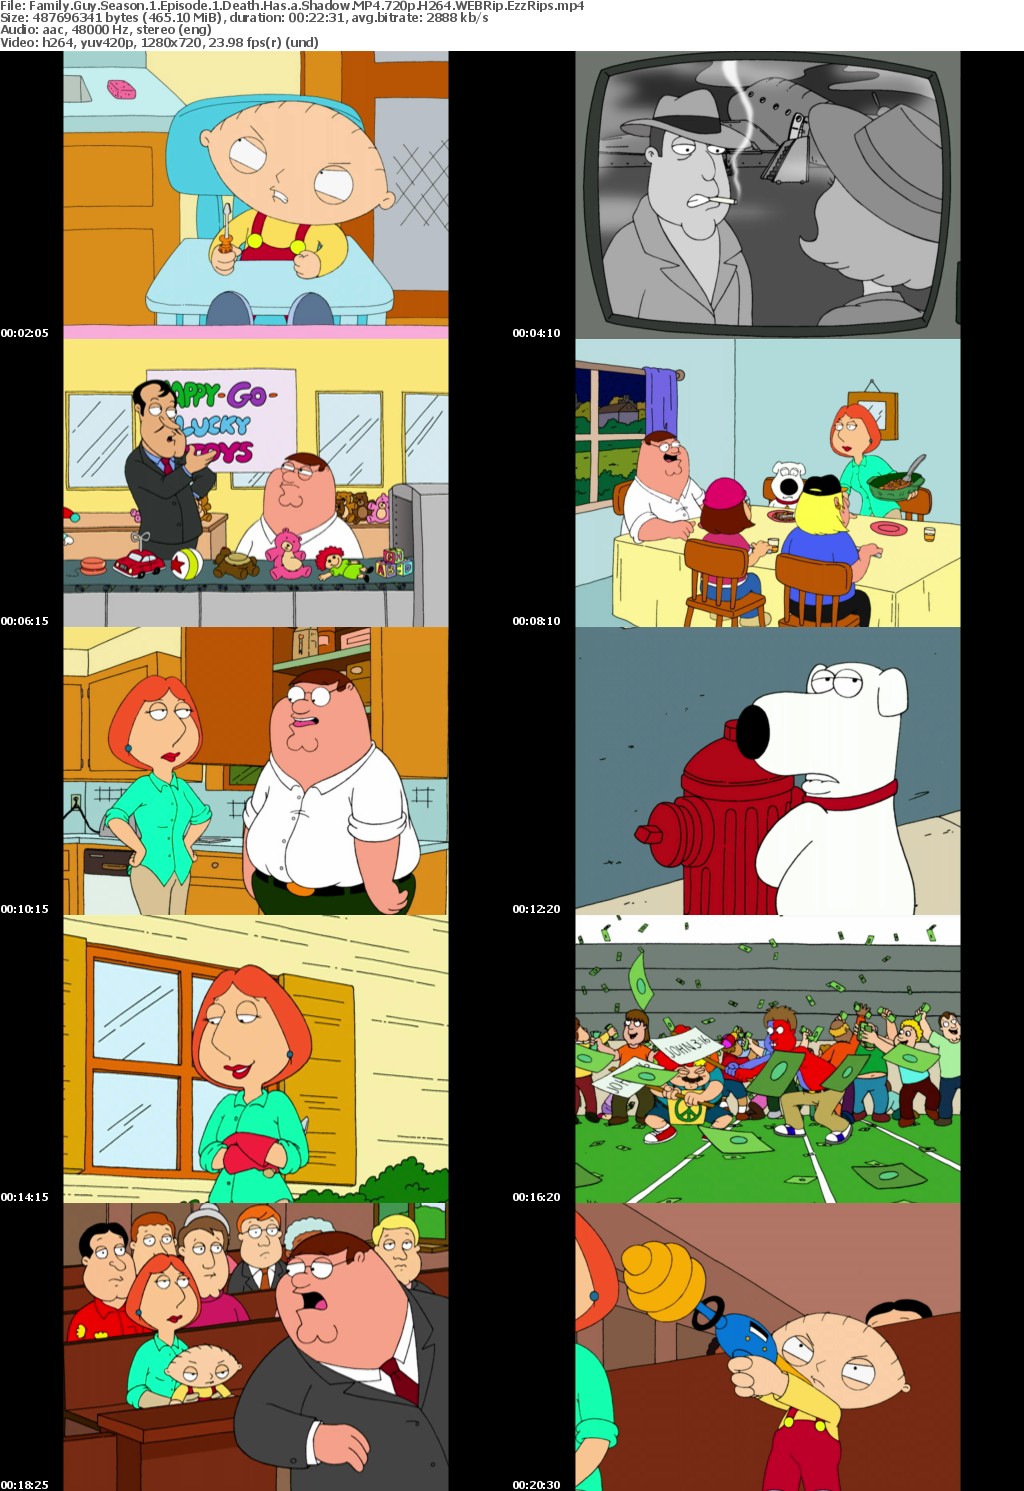 Family Guy Season 1 Episode 1 Death Has a Shadow MP4 720p H264 WEBRip EzzRips